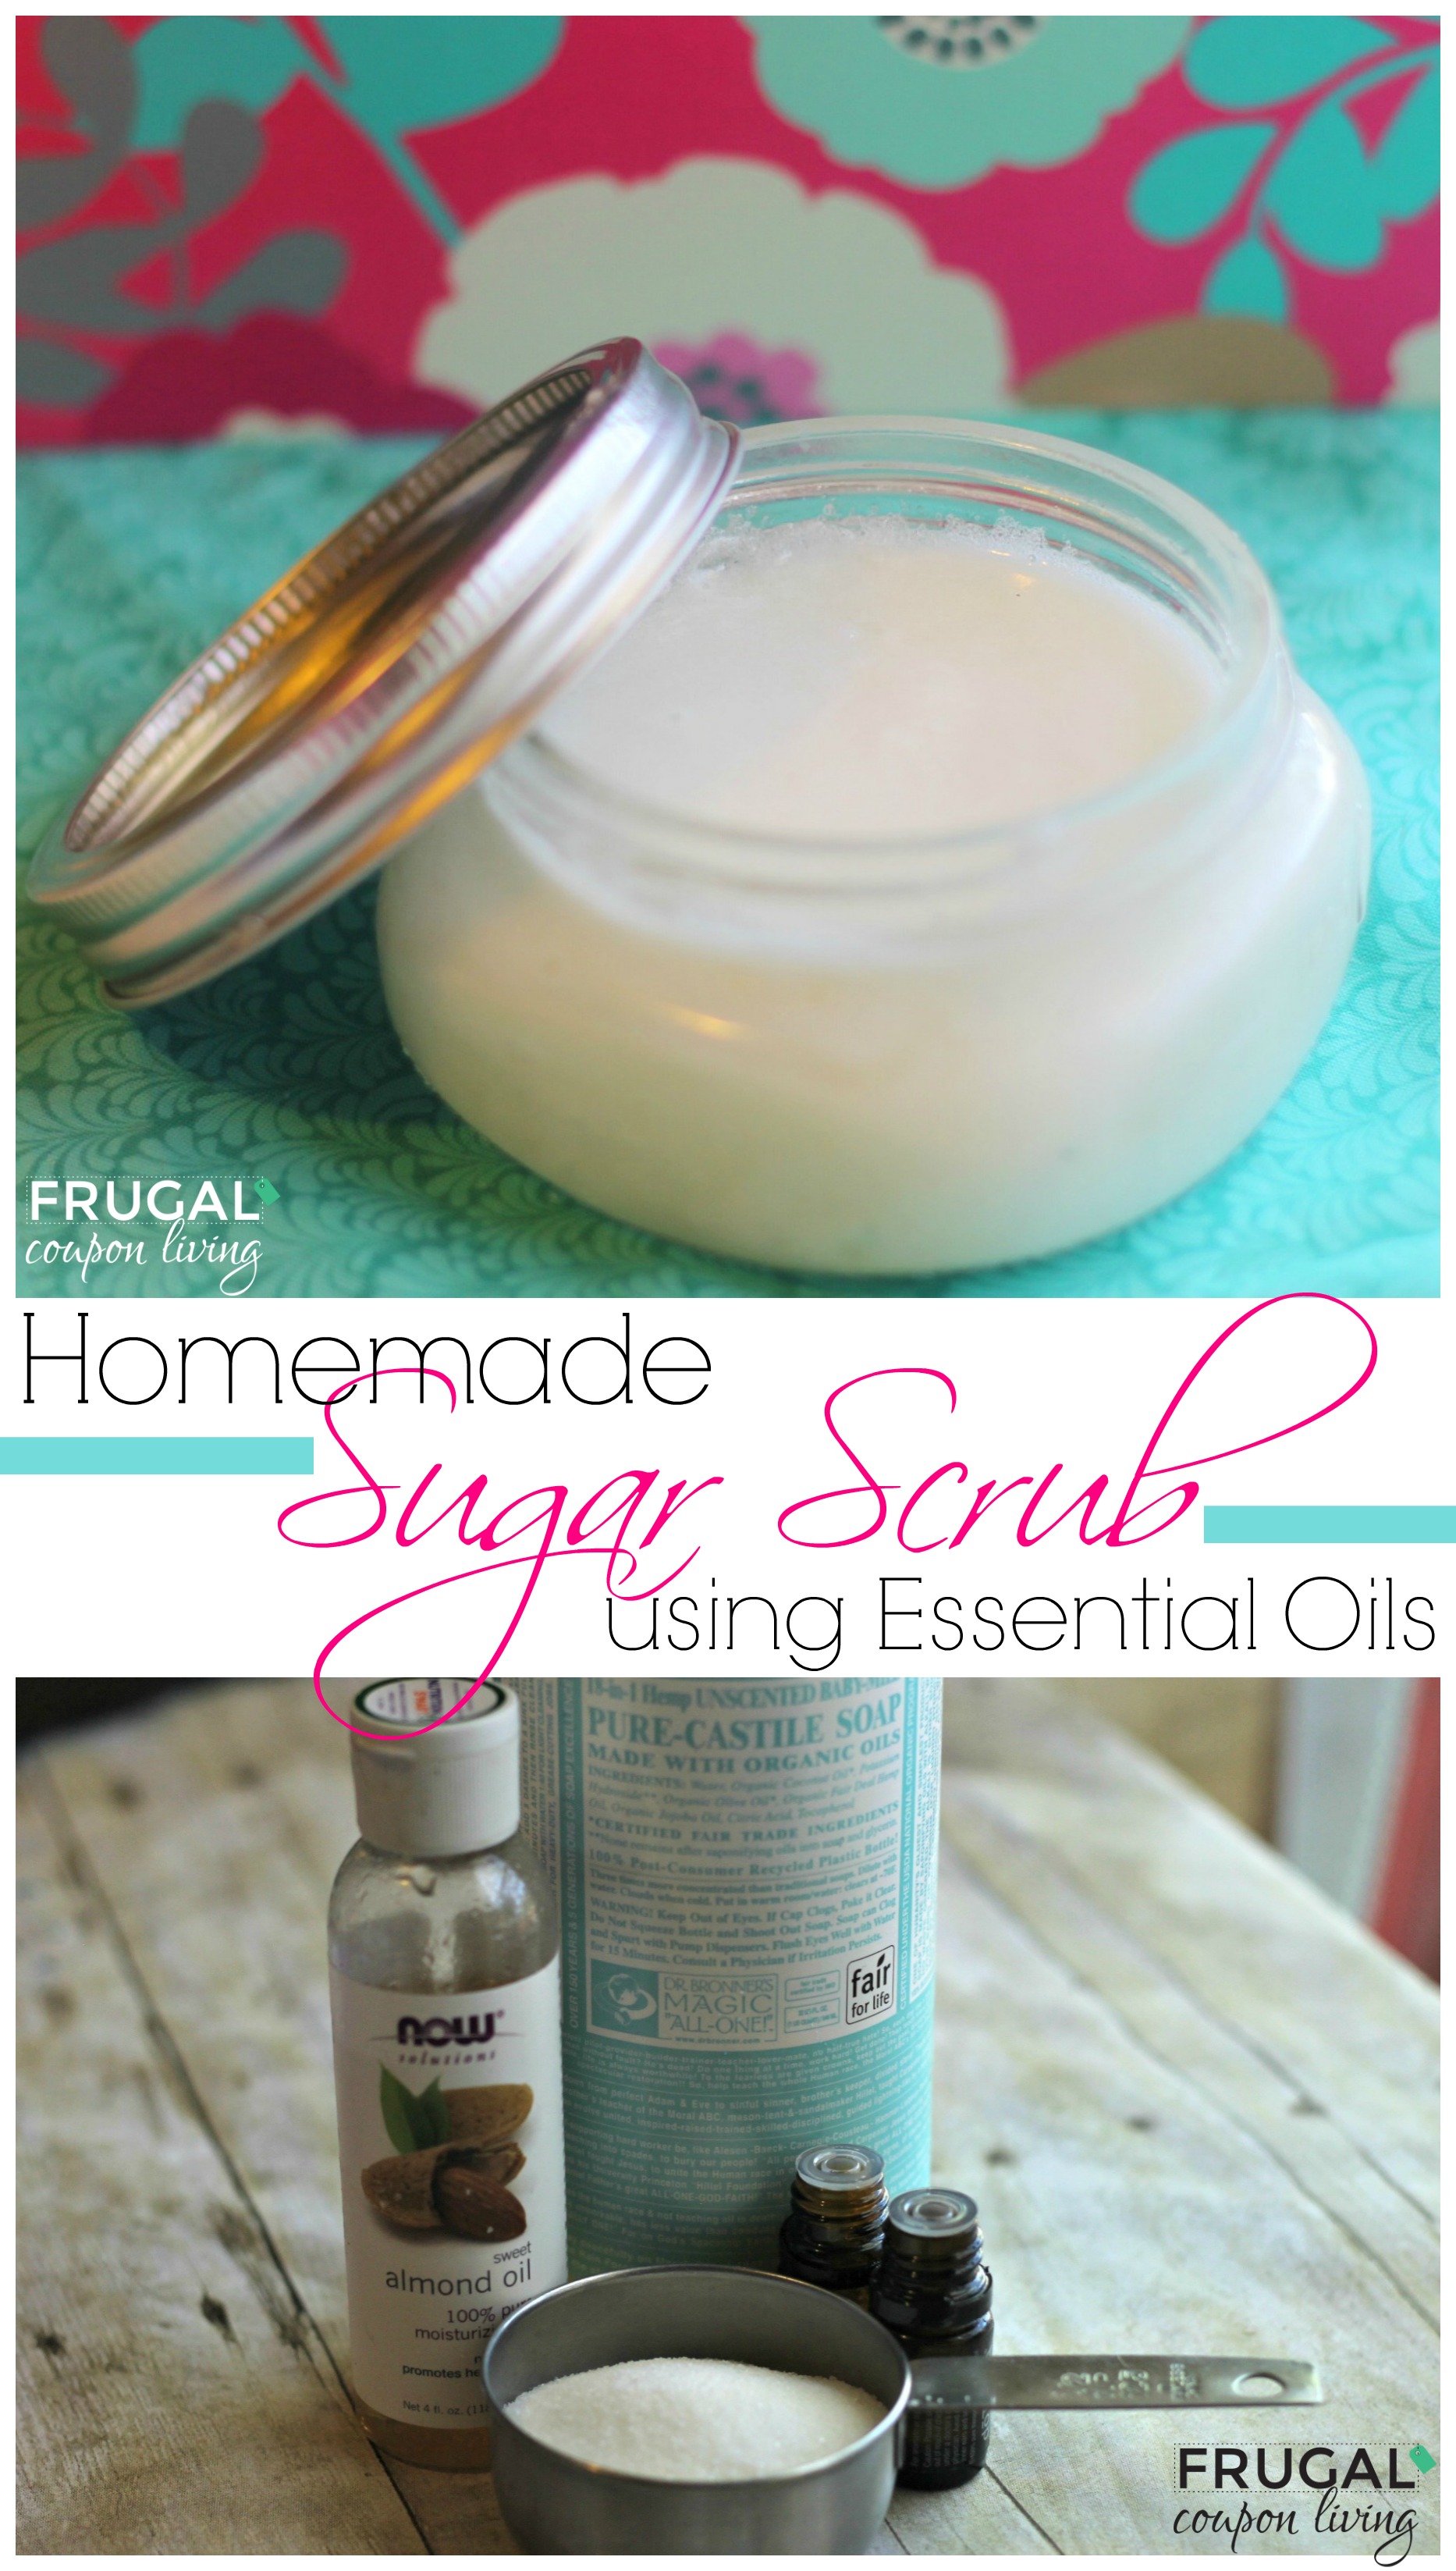 homemade-sugar-scrub-with-essential-oils